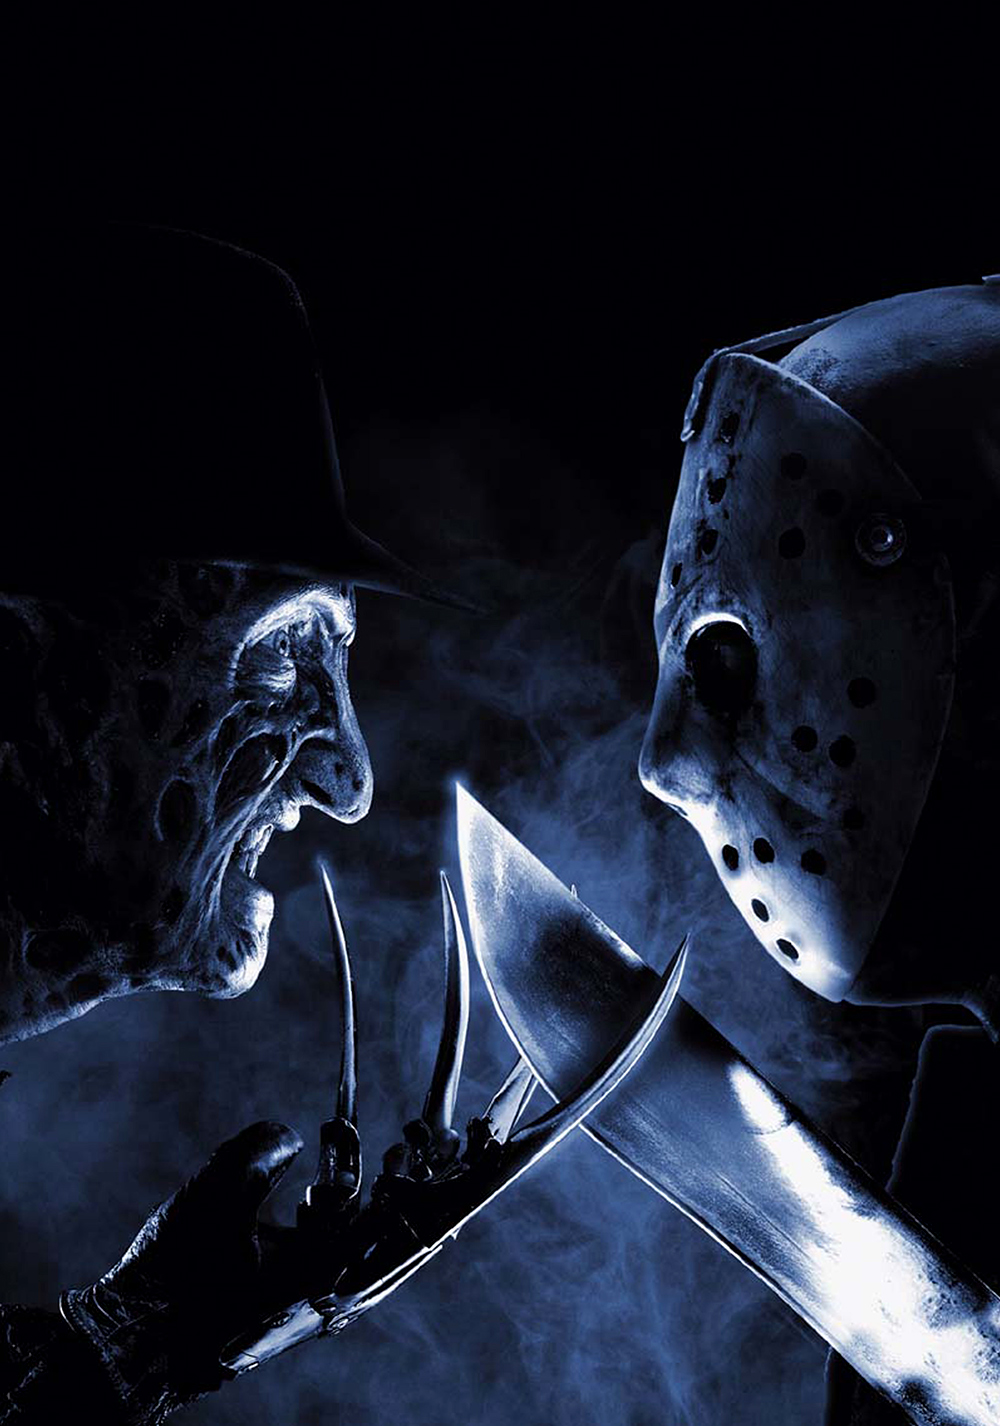 Freddy vs. Jason Picture